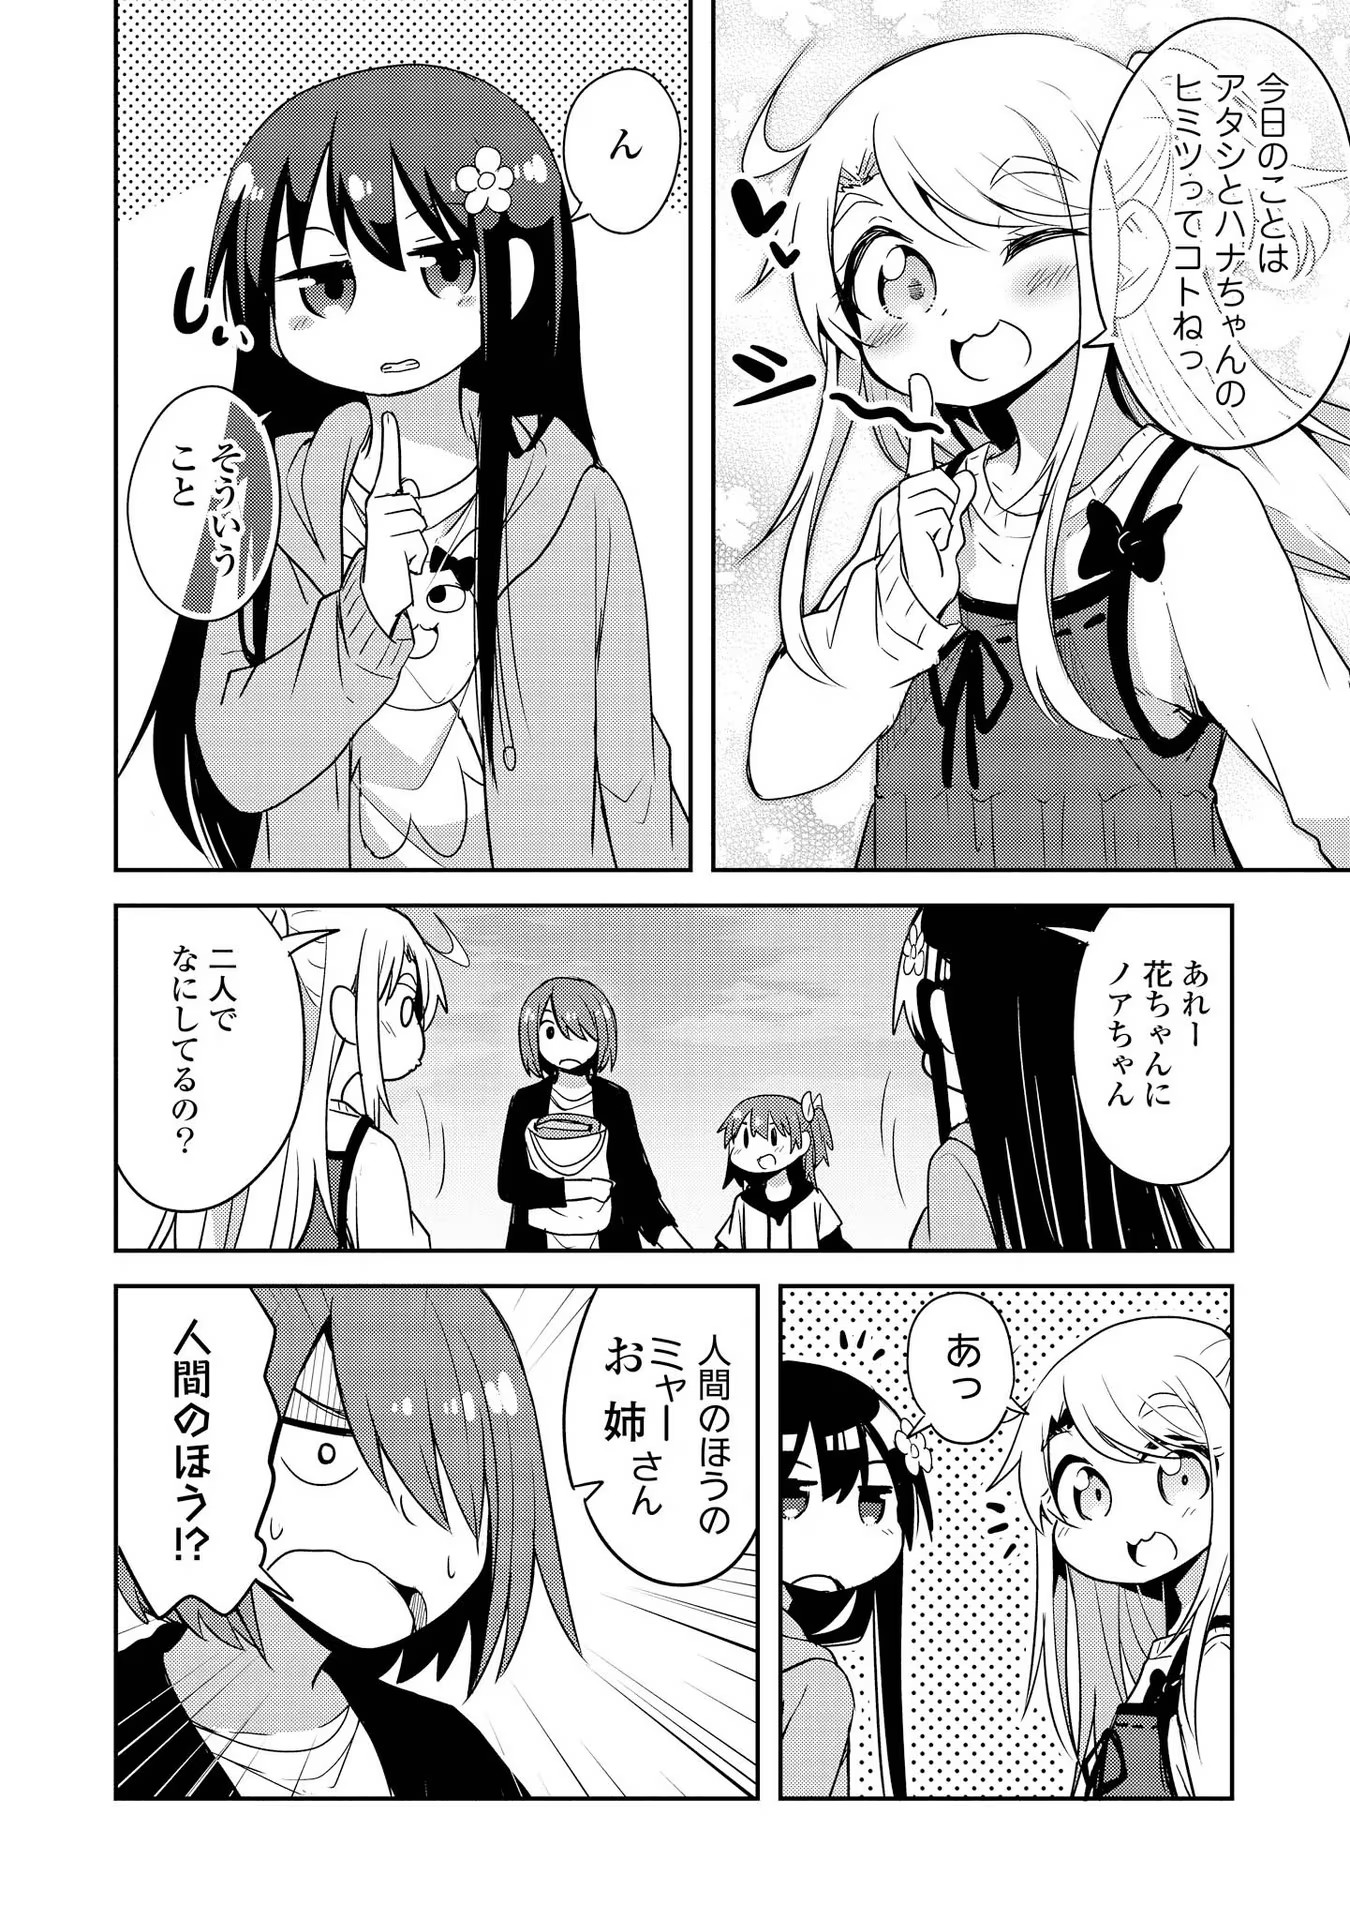 Watashi ni Tenshi ga Maiorita! - Chapter 26 - Page 16